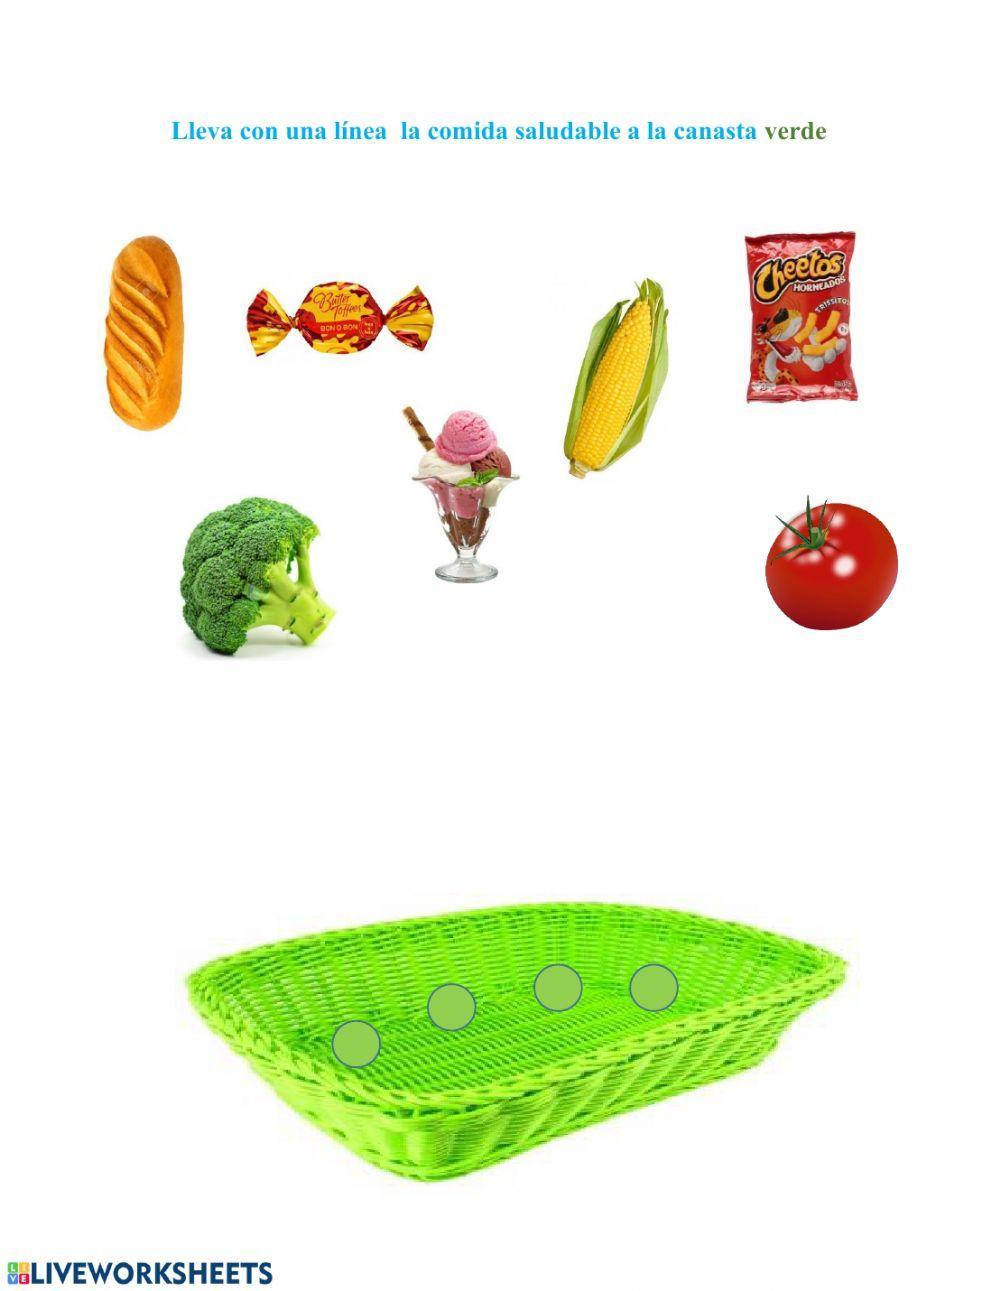 Colores y alimentos